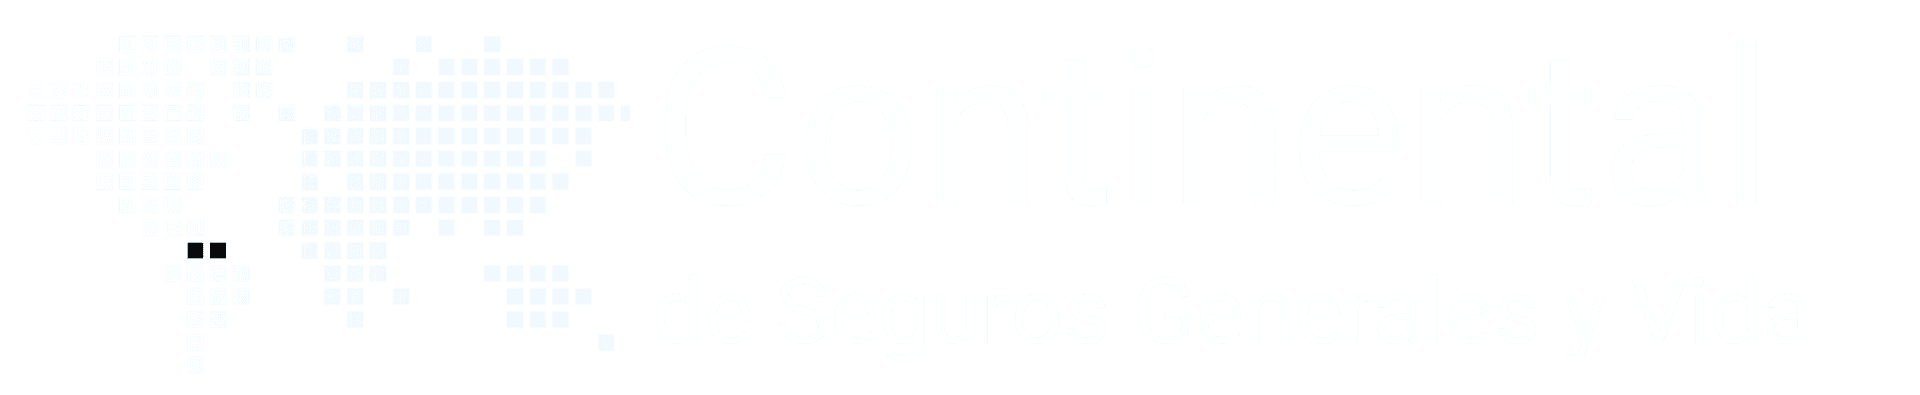 logos/continental-logo.png